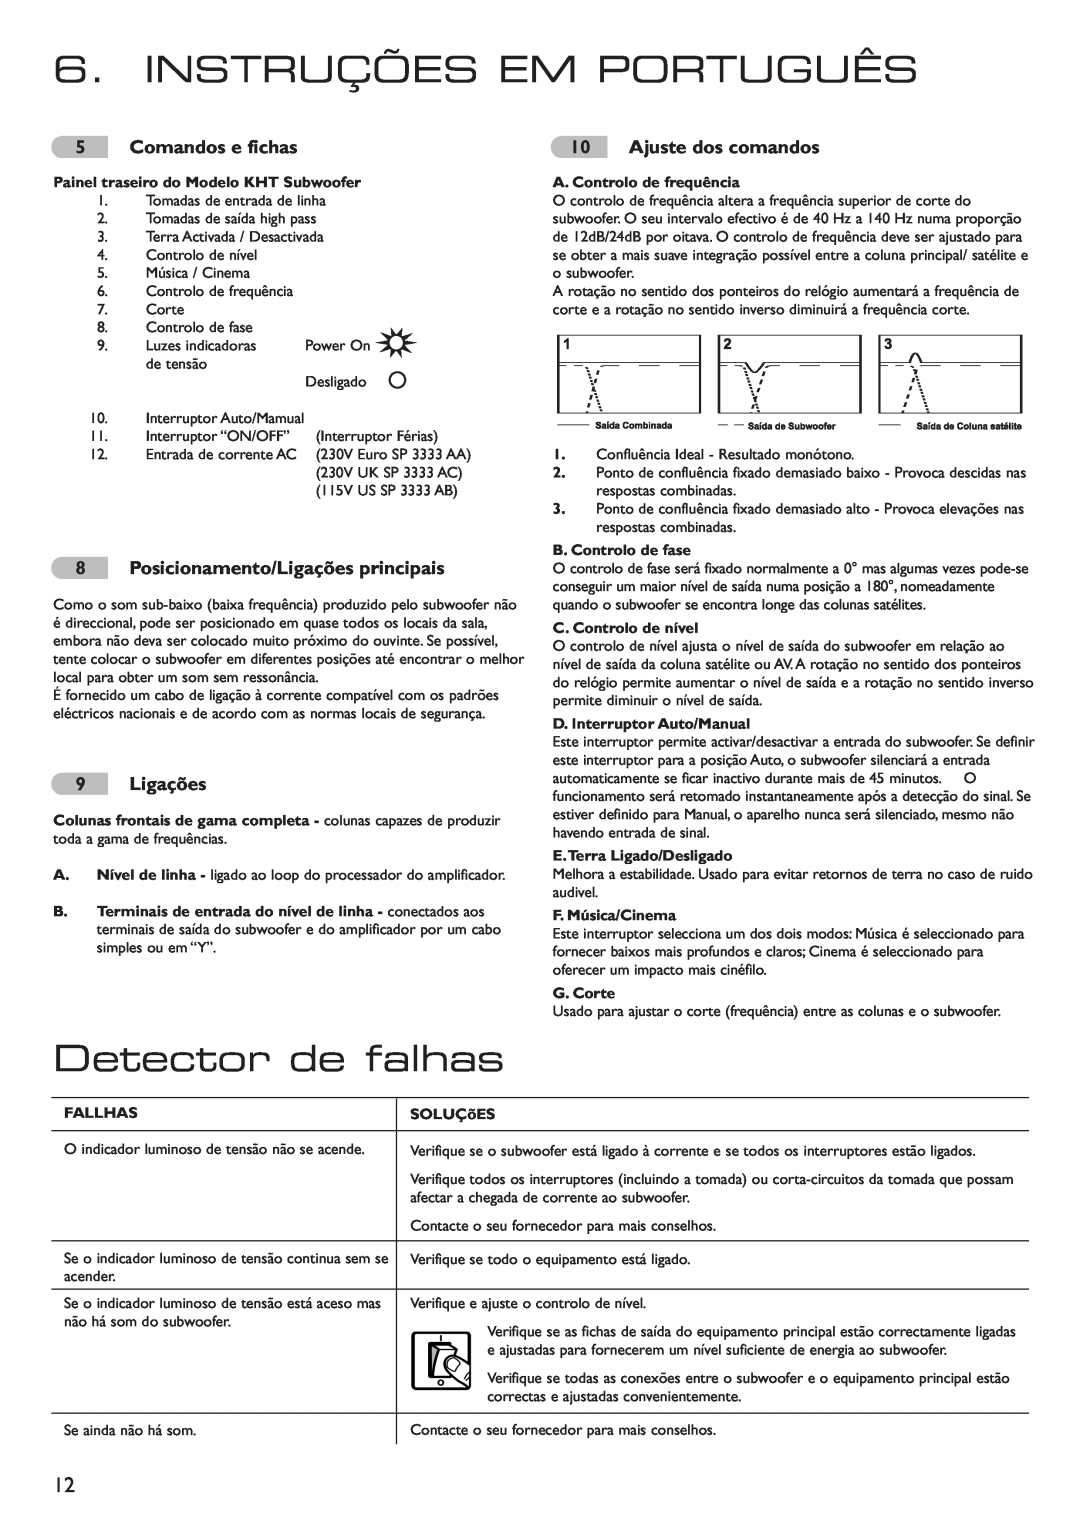 KEF Audio 290149ML Instruções Em Português, Detector de falhas, Posicionamento/Ligações principais, Ajuste dos comandos 